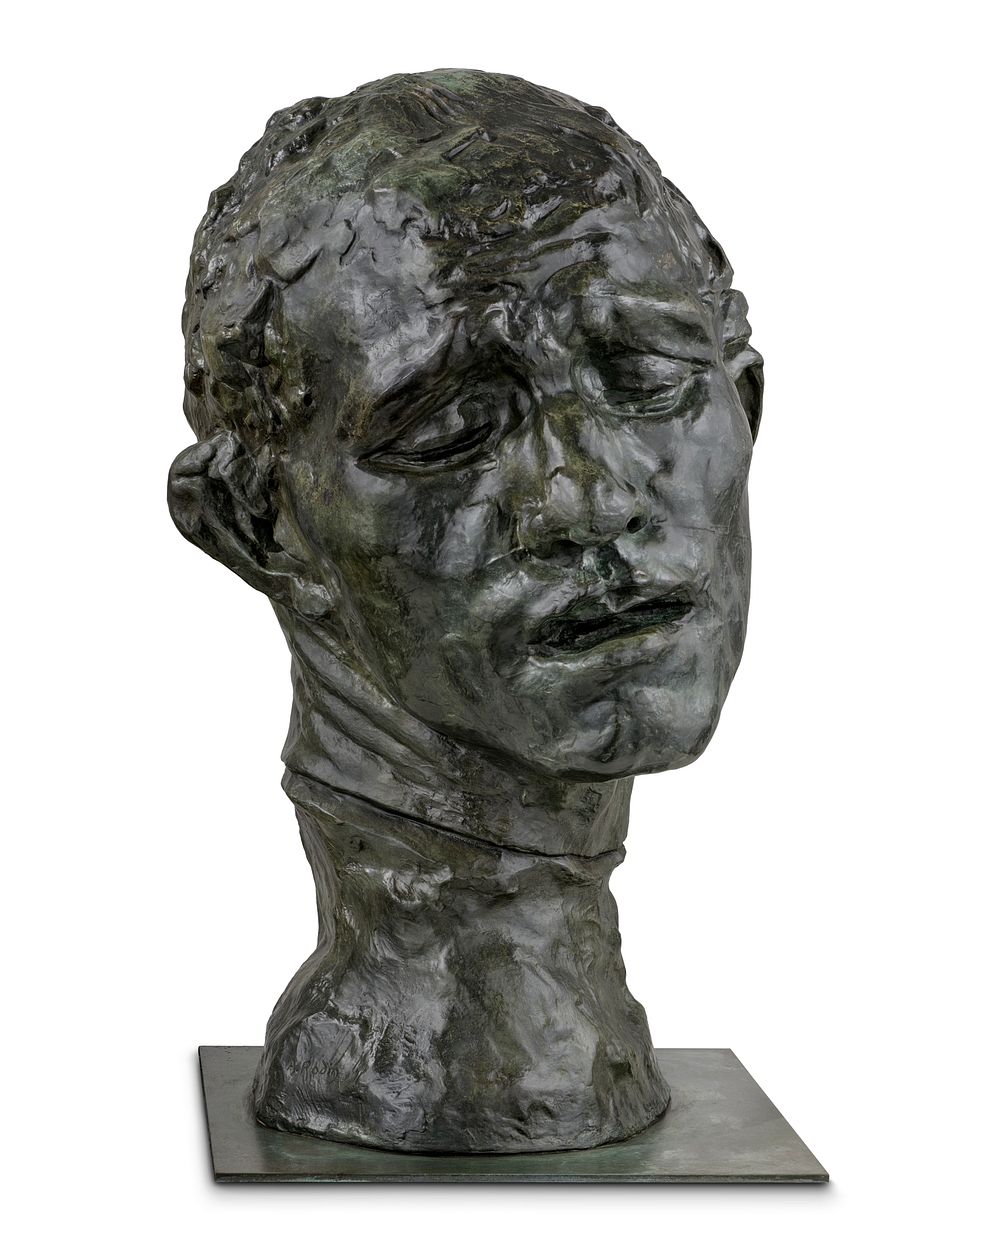 Monumental Head of Pierre de Wissant by Auguste Rodin